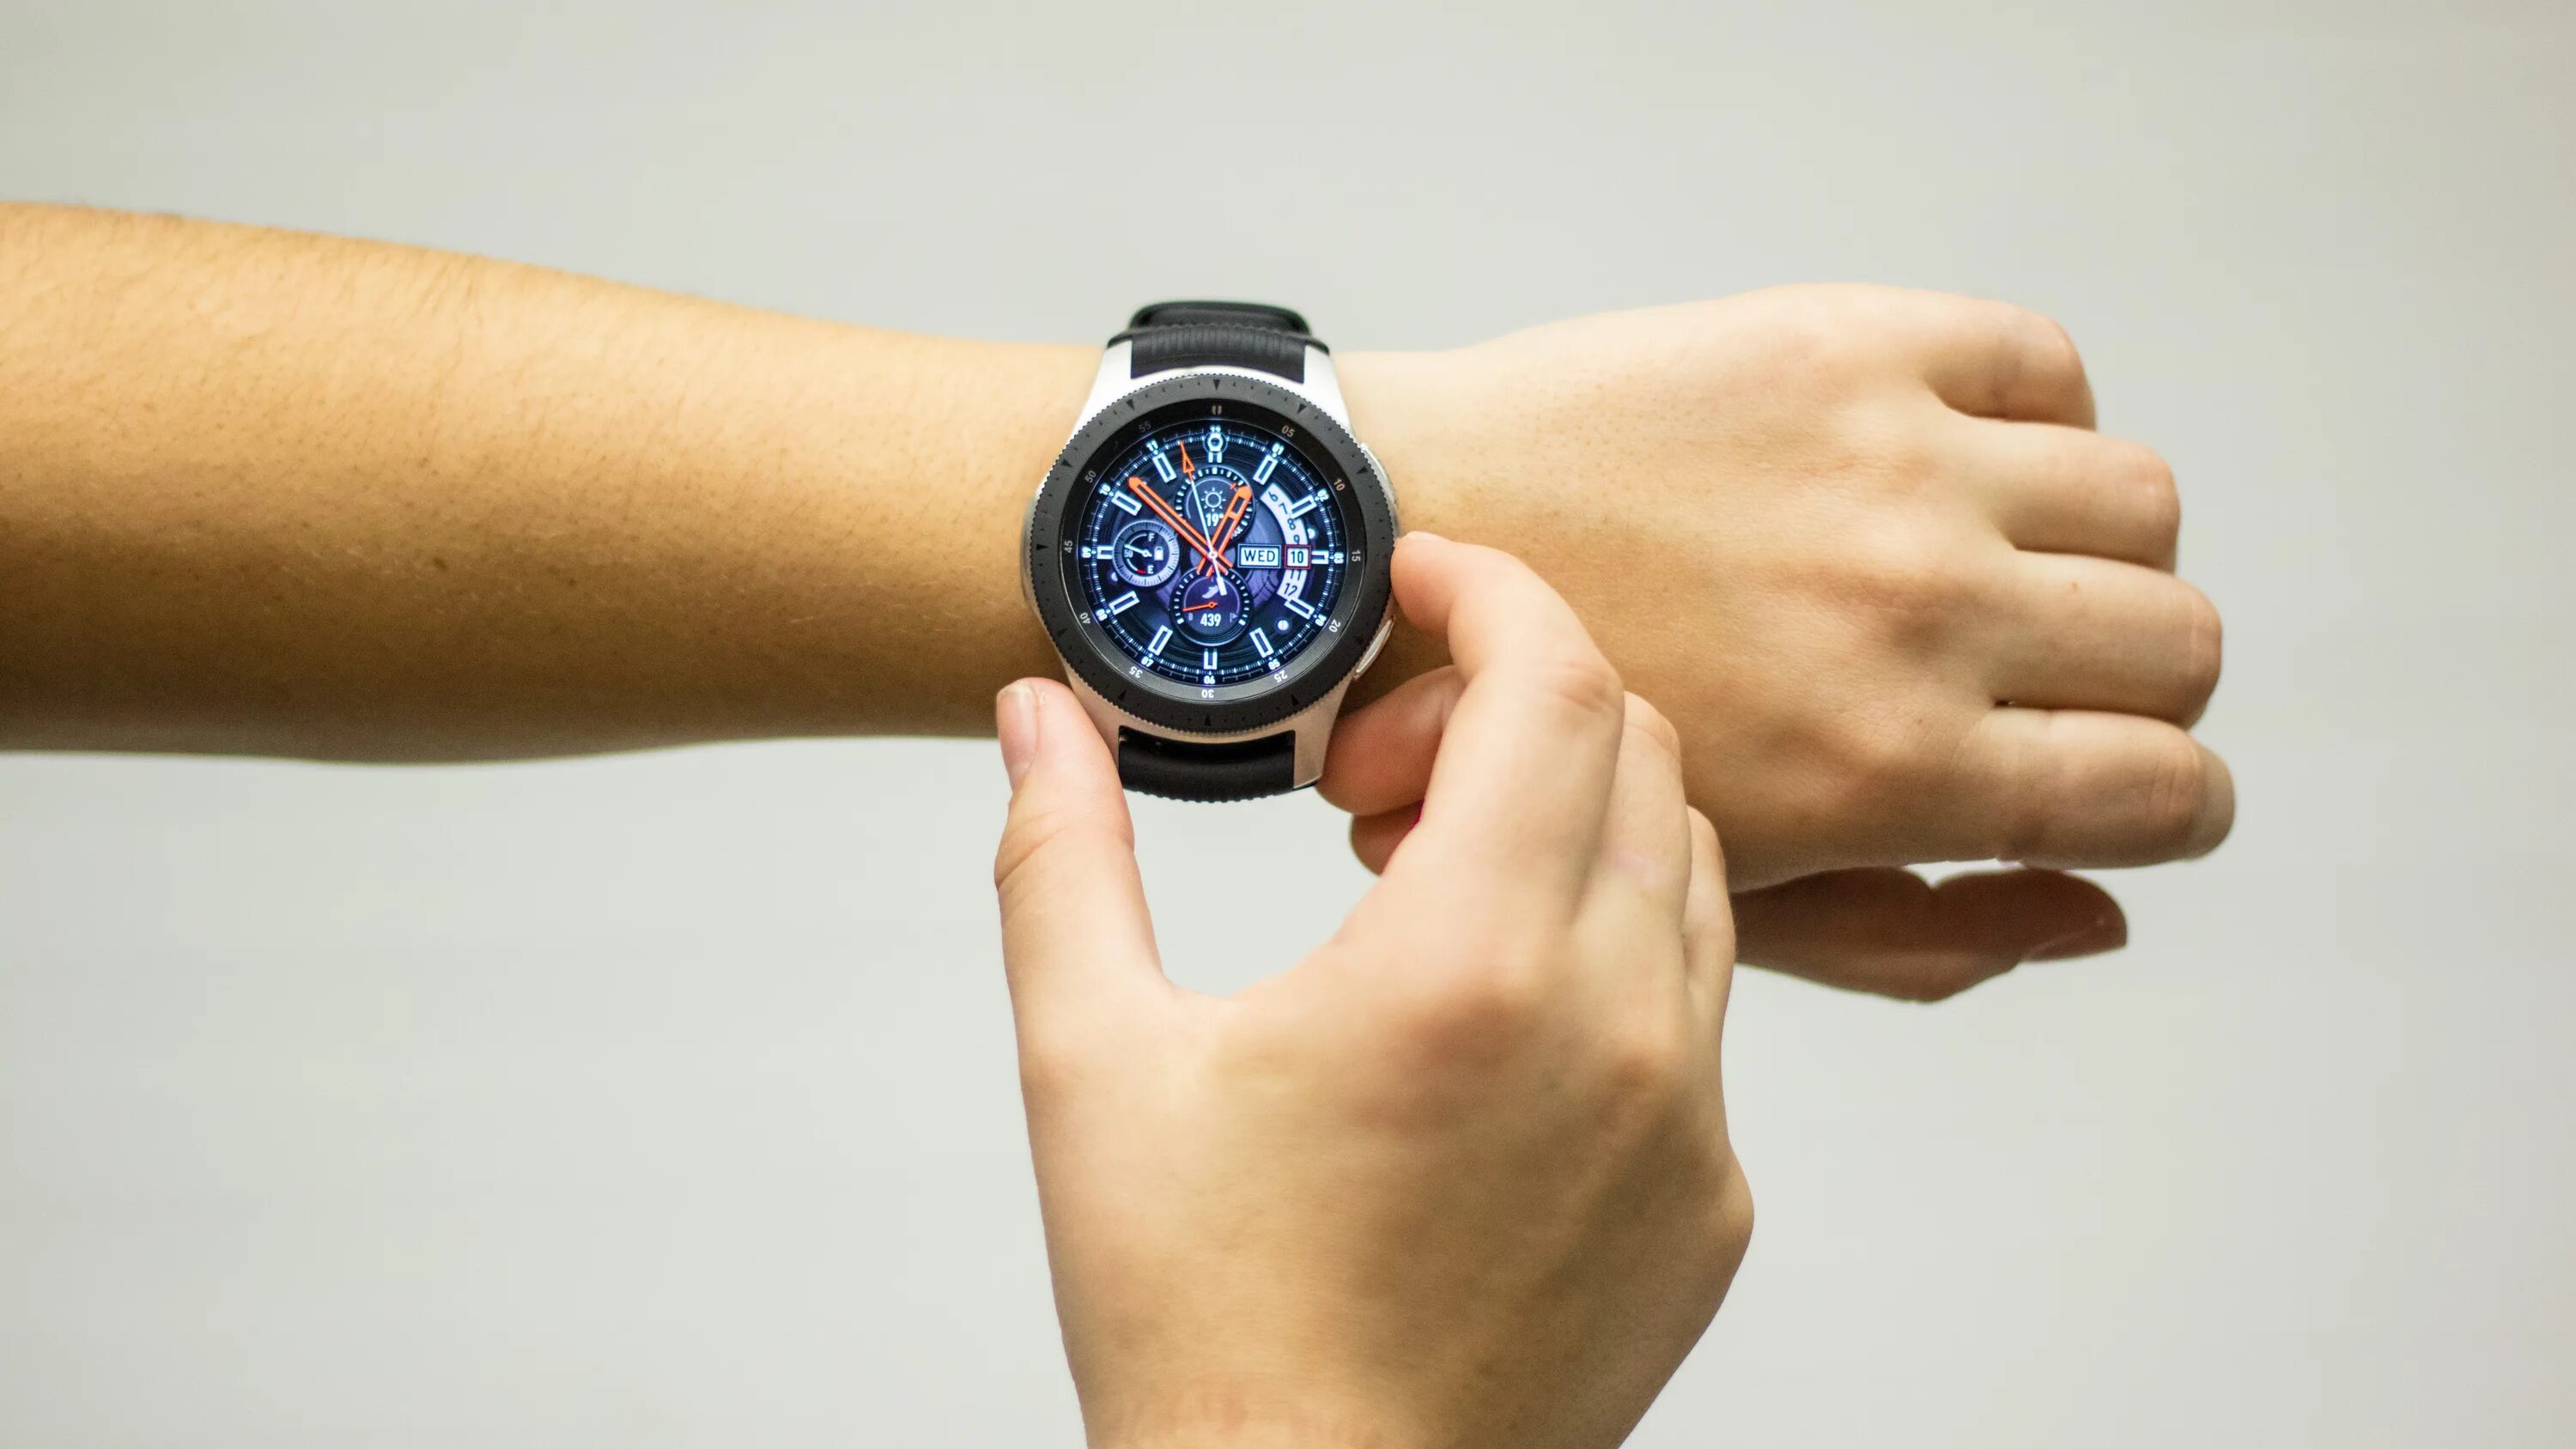 Samsung Galaxy watch 4 46. Samsung Galaxy watch 4 46mm. Samsung Galaxy watch 46мм. Galaxy watch 4 Classic 46 мм. Часы 4g видео